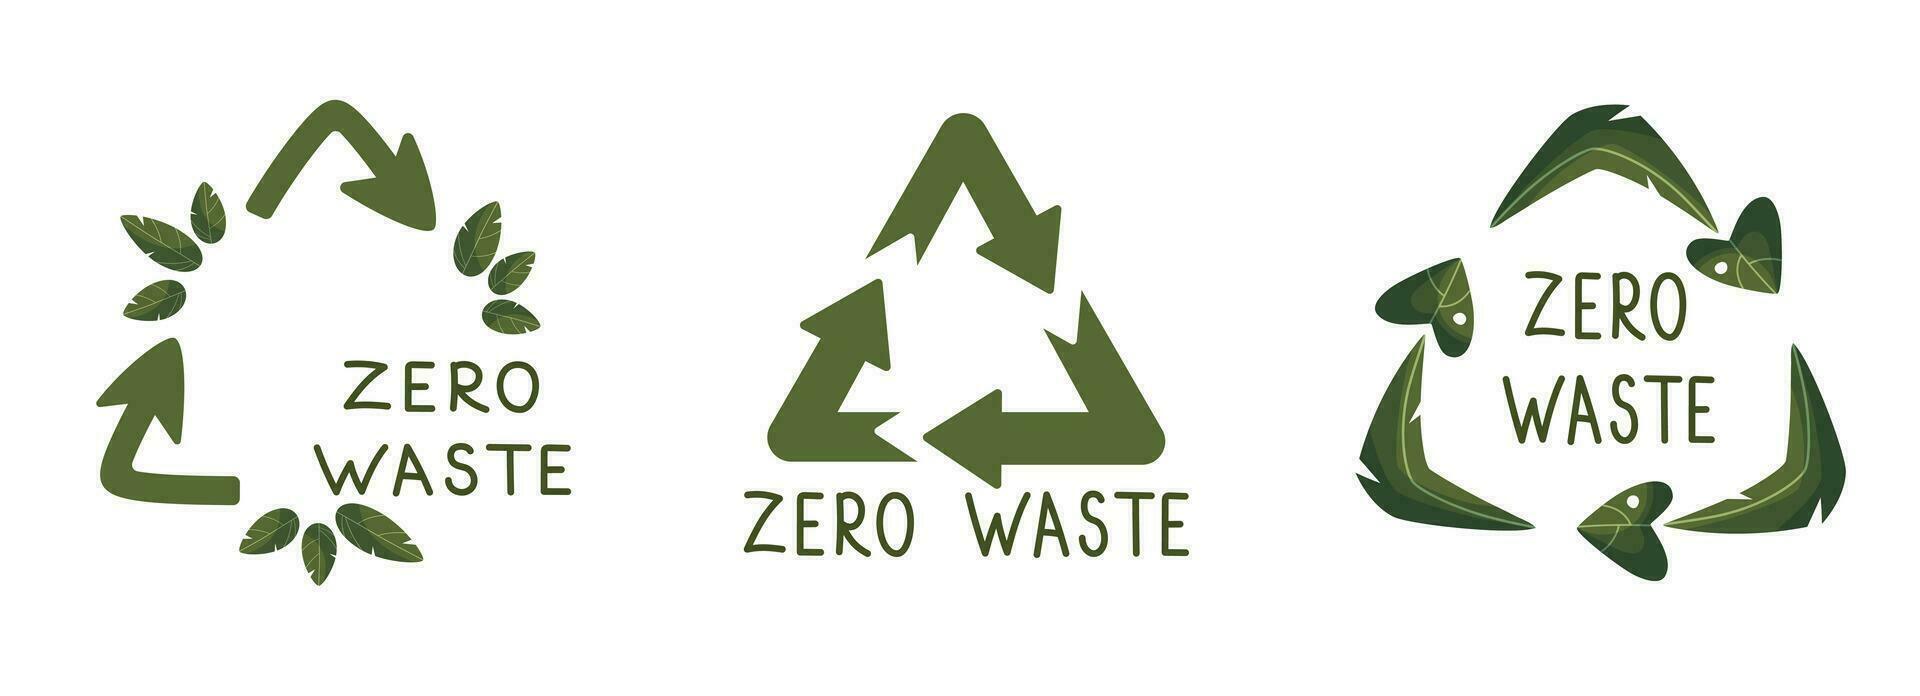 noll avfall etiketter. grön eco vänlig märka, minska avfall och återvinna ikon med växt löv vektor uppsättning. Nej plast ekologisk skydd logotyp med grön